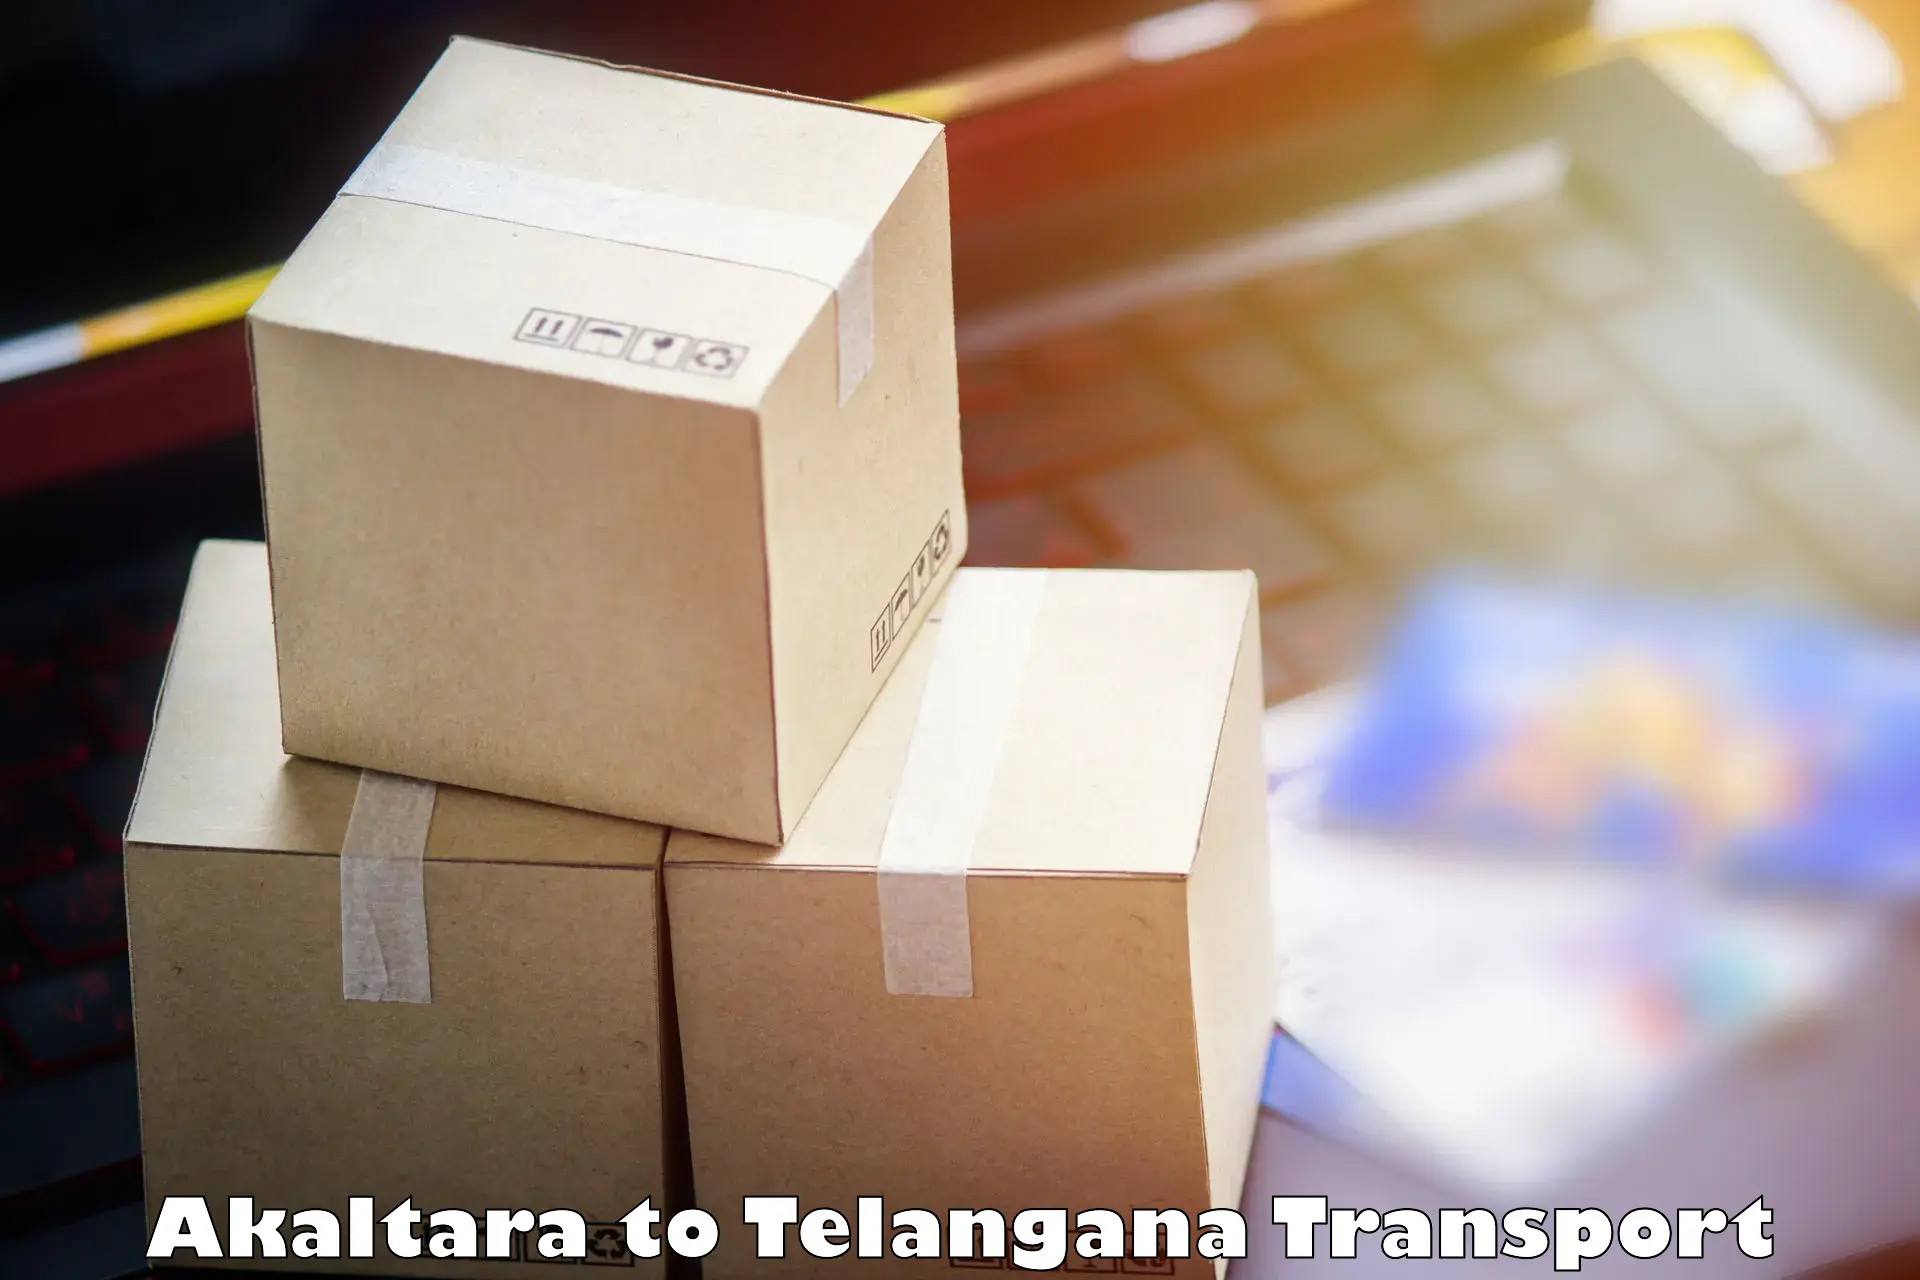 Shipping partner Akaltara to Bodhan